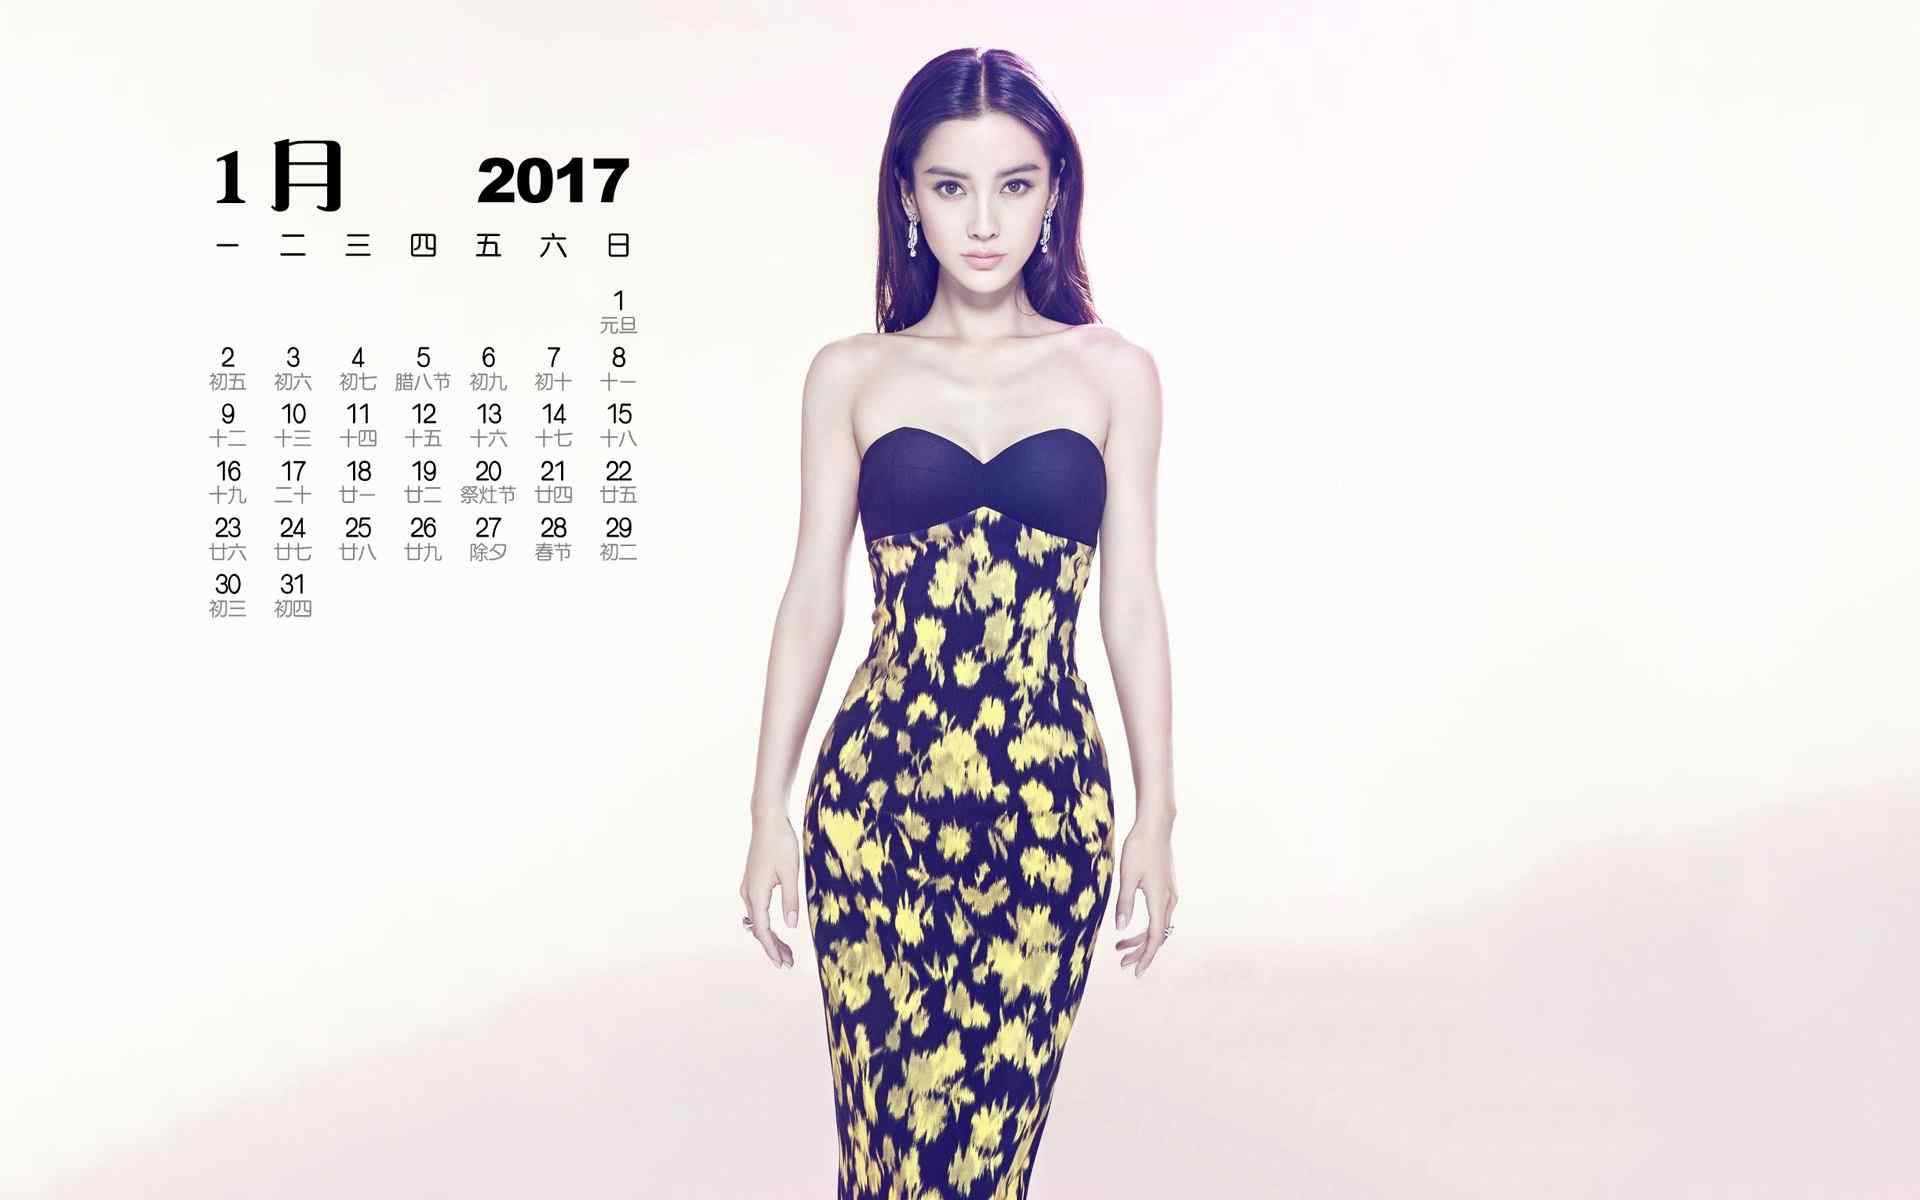 2017年1月日历美女明星时尚写真高清桌面壁纸